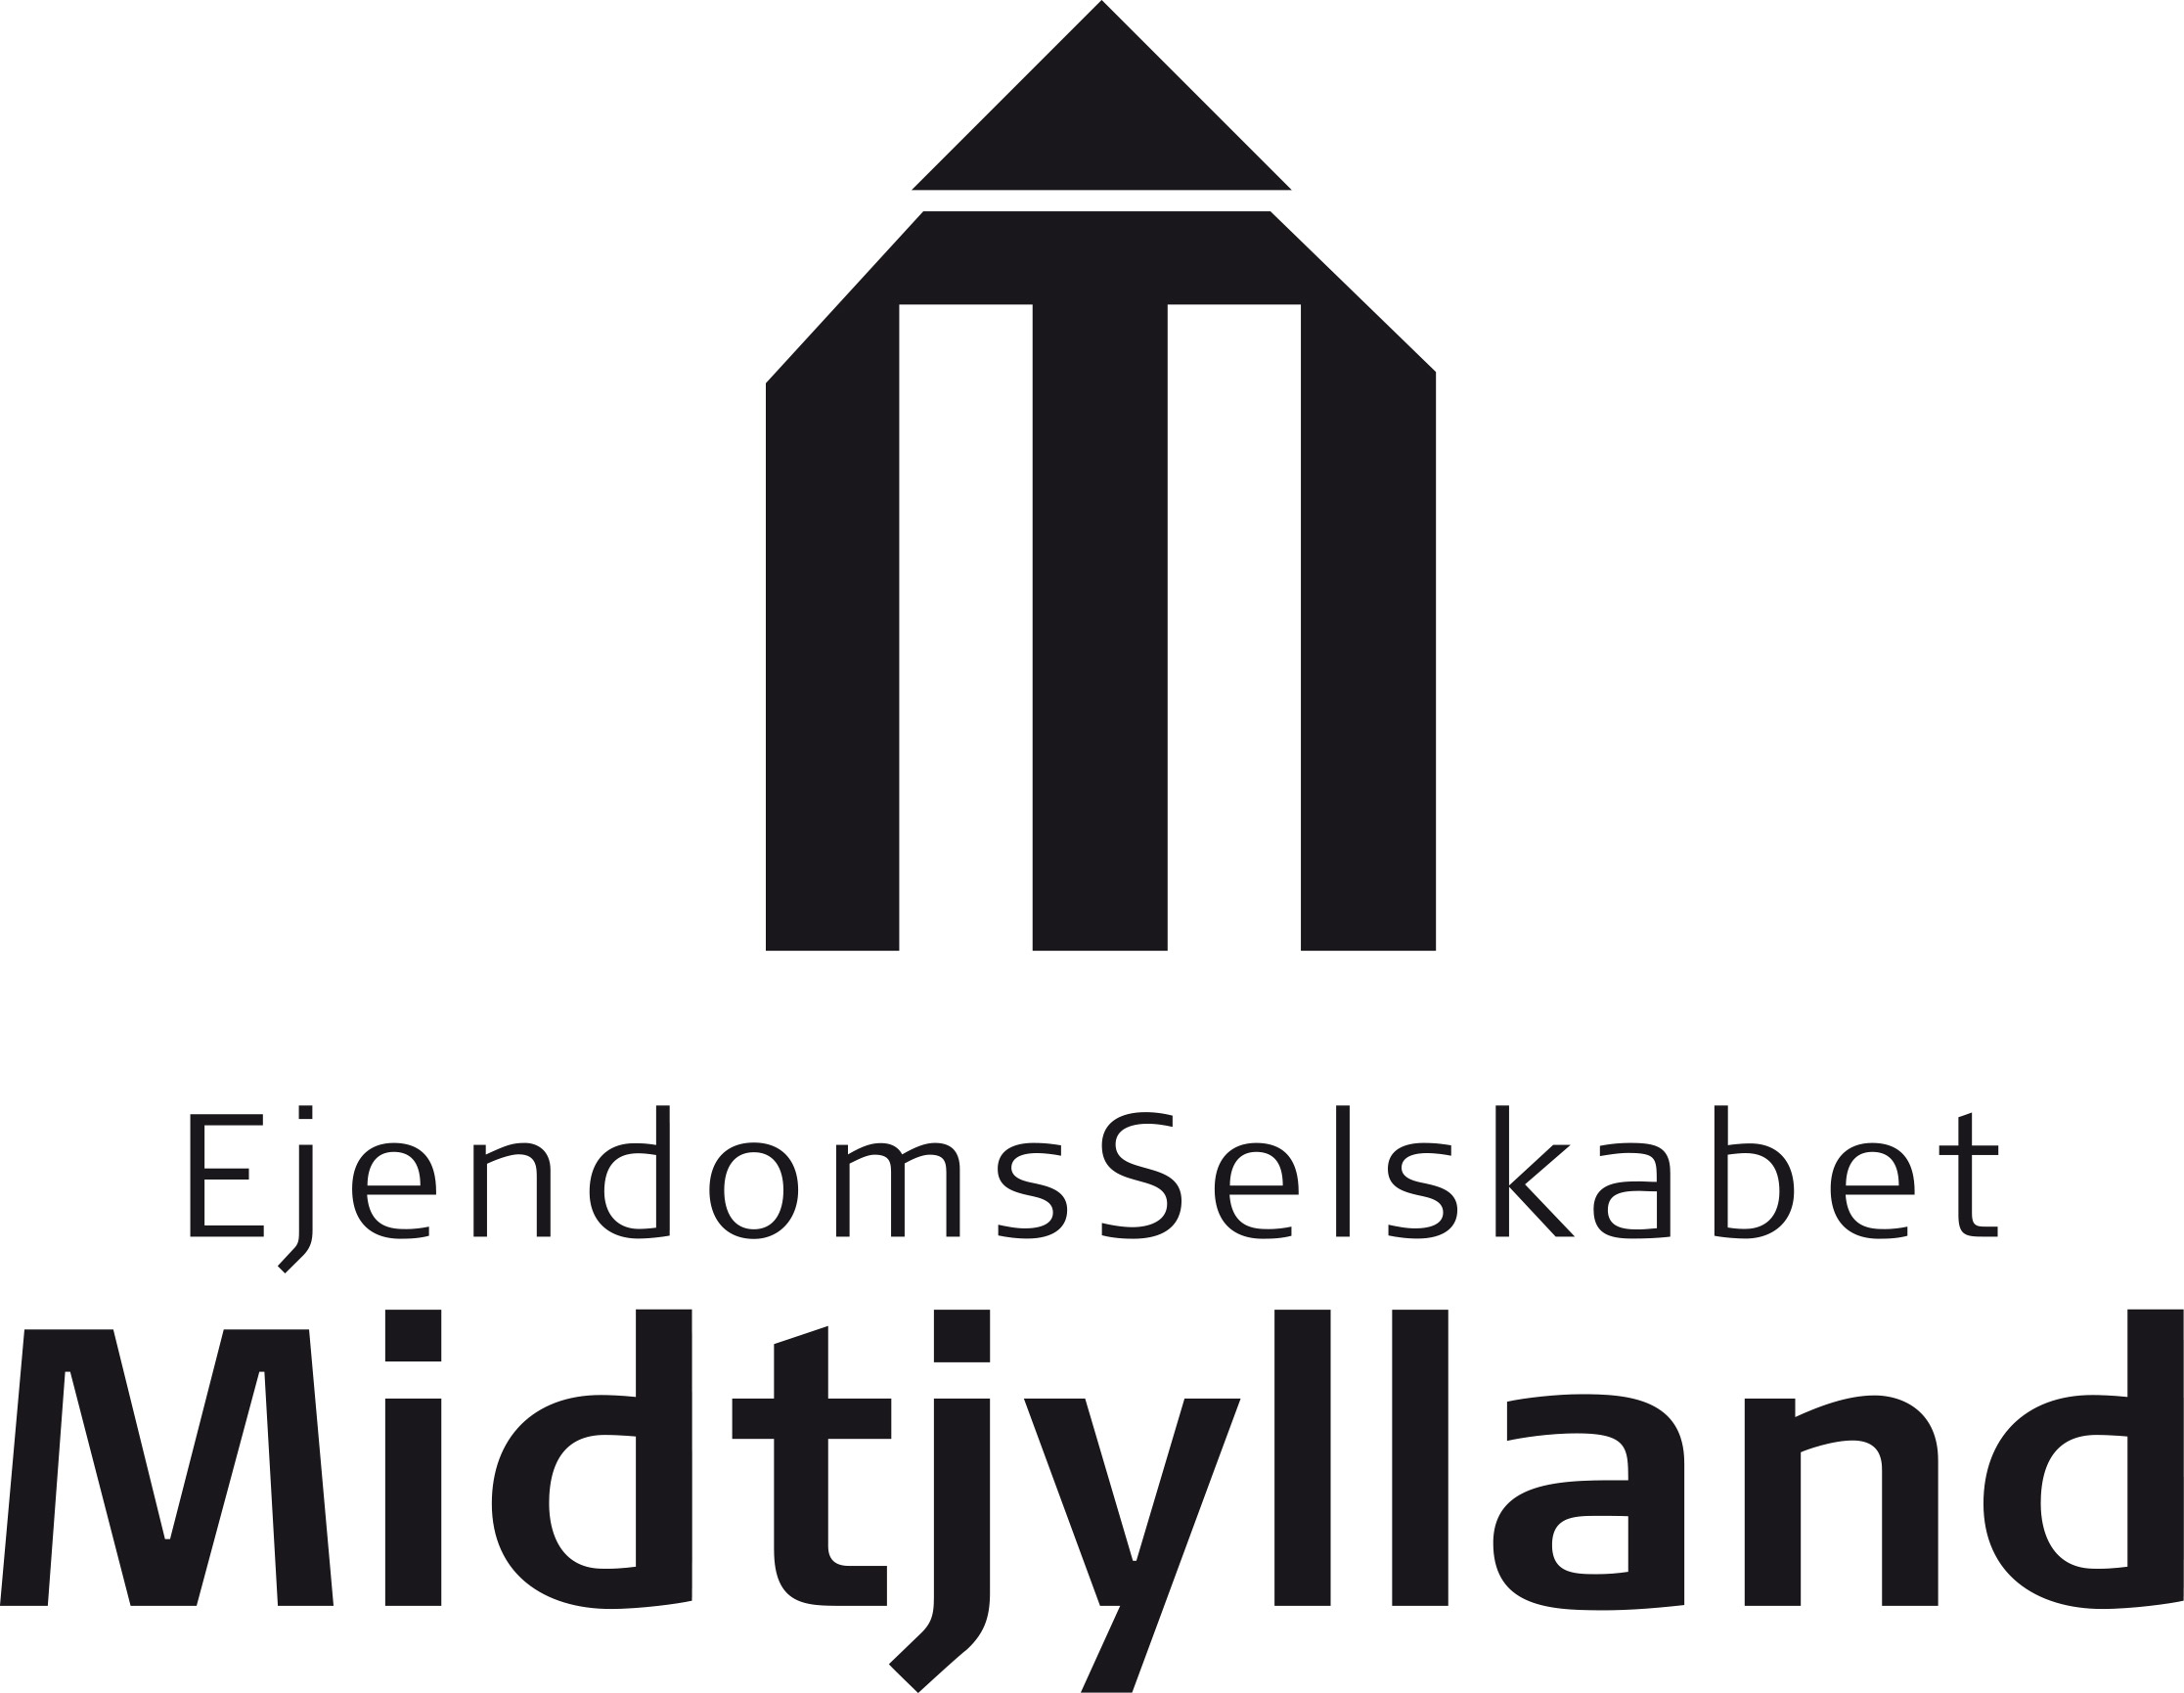 Ejendomsselskabet Midtjylland